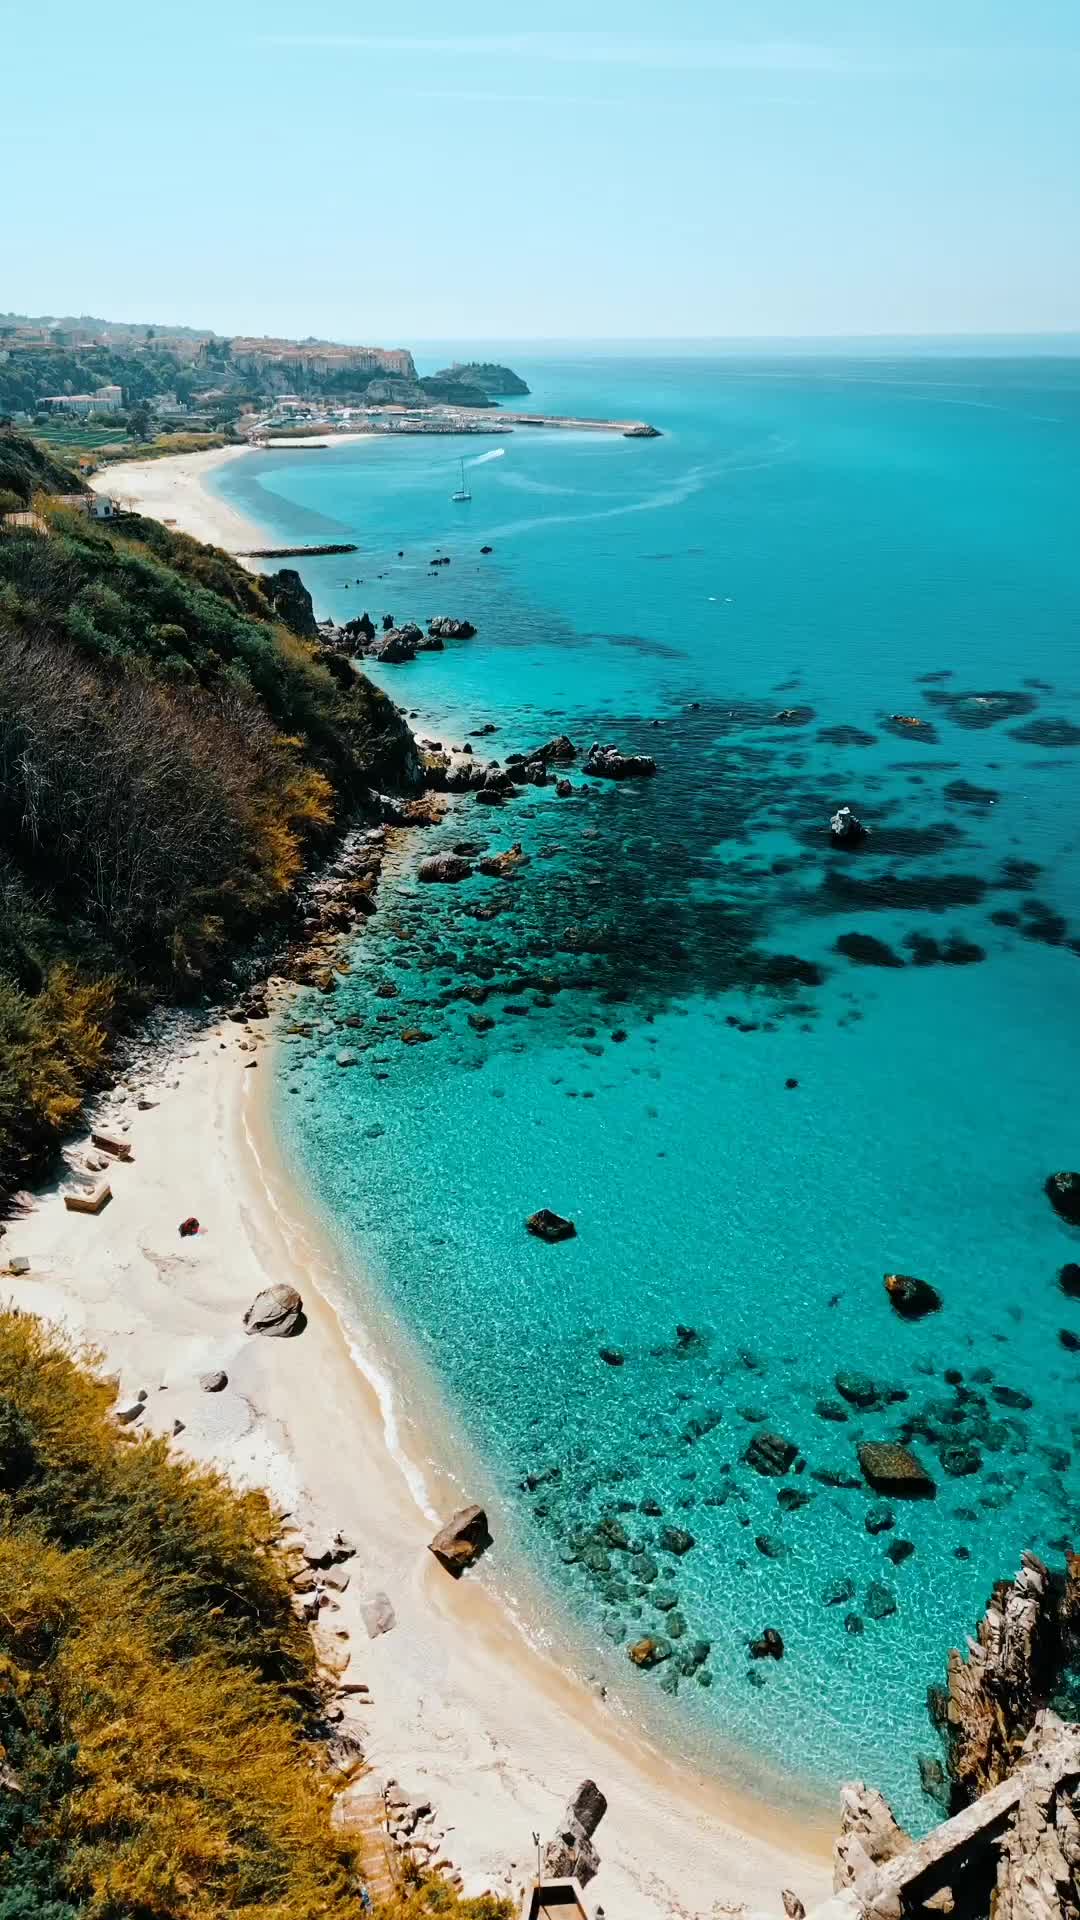 Discover Calabria's Blue Paradise at Costa degli Dei